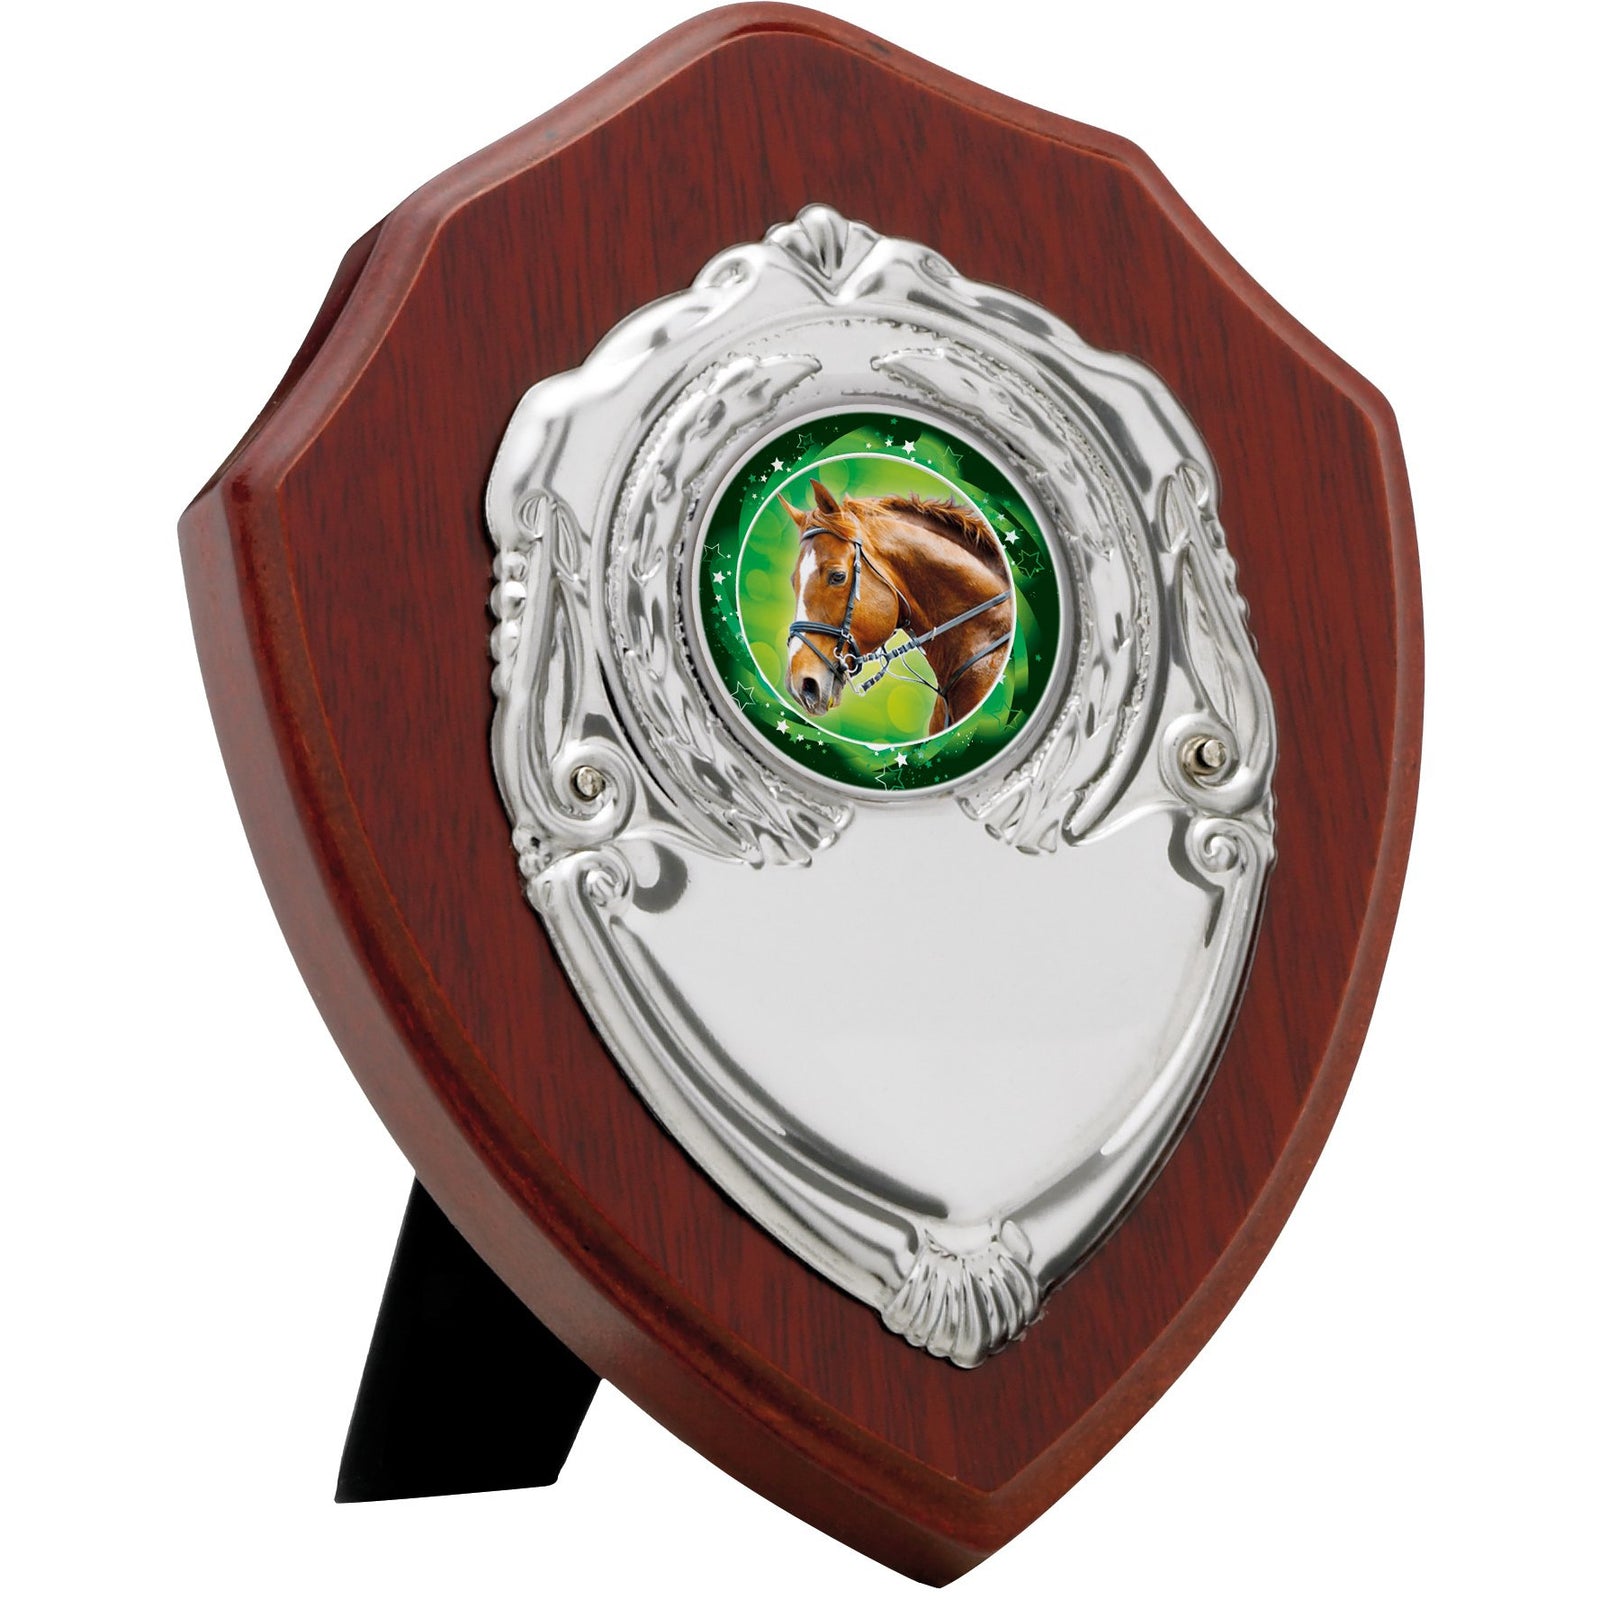 Mahogany Finish Presentation Shield Award